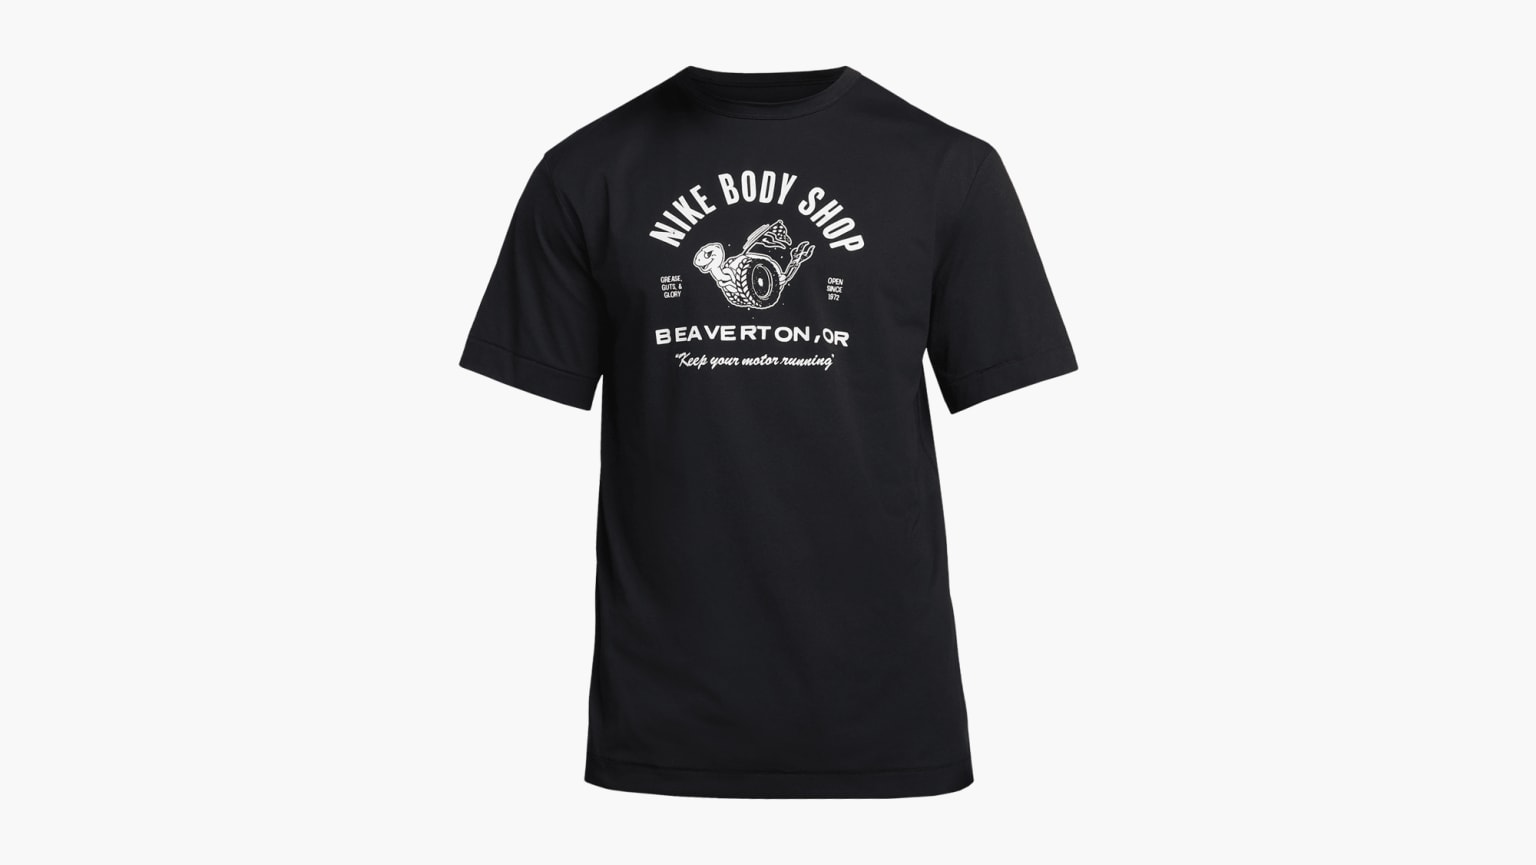 Nike Hyverse - Noir - T-shirt Running Homme